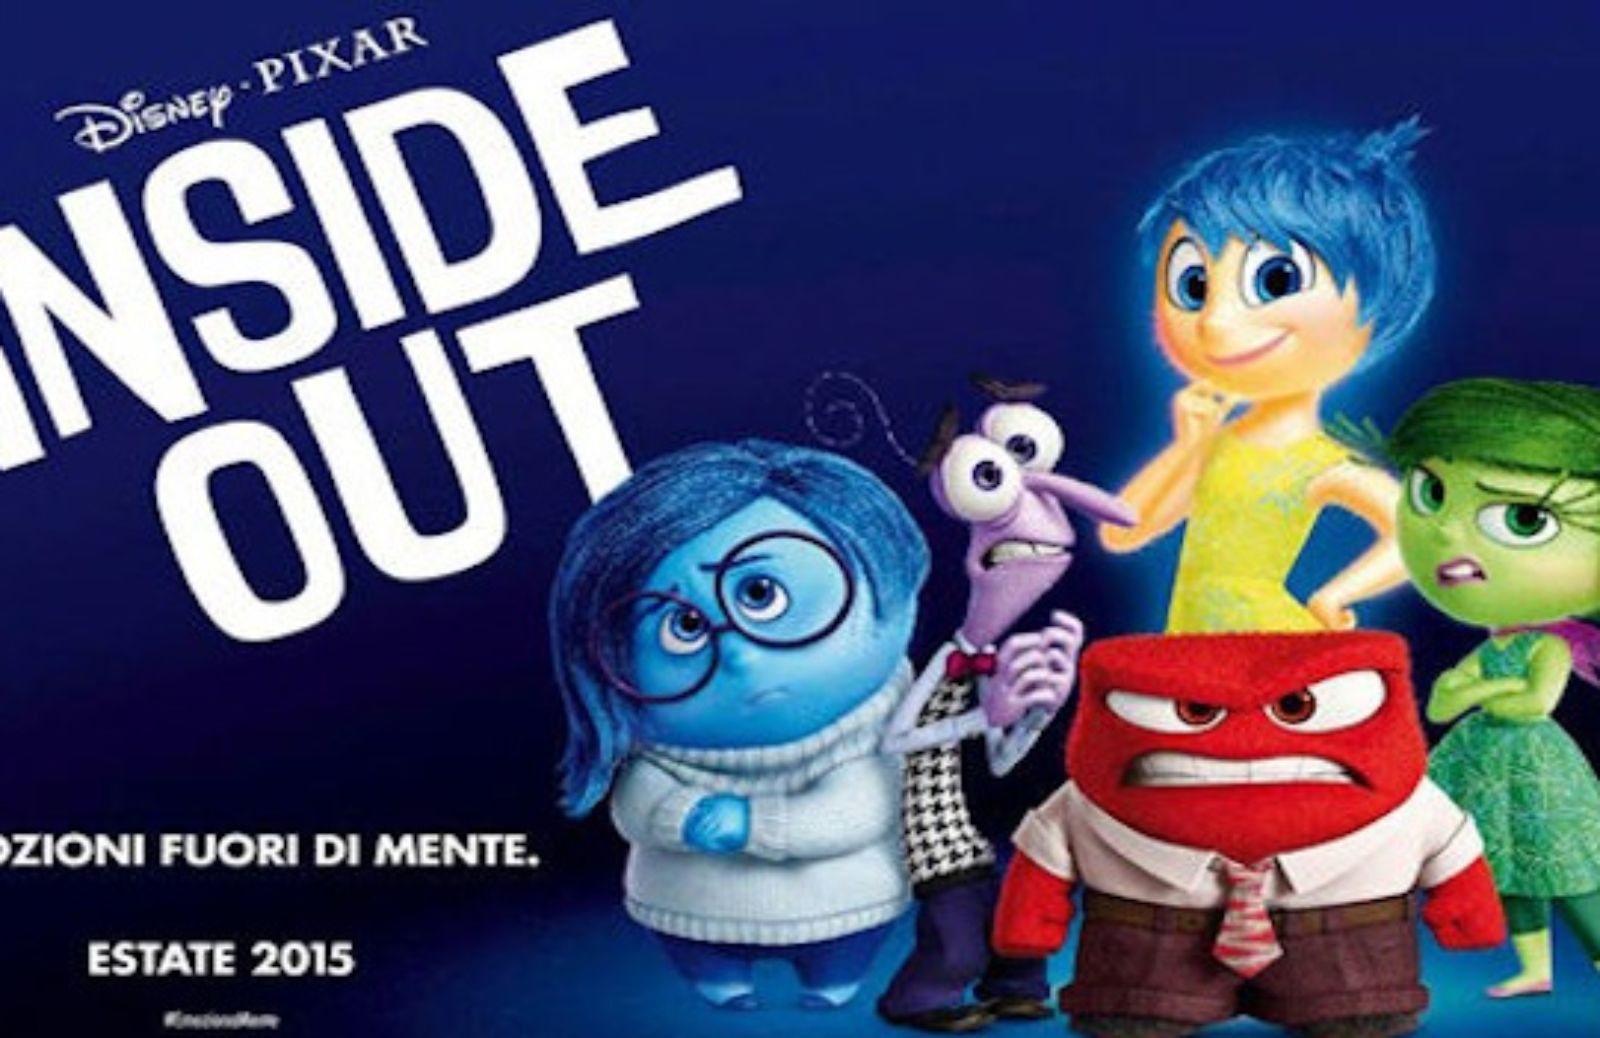 In arrivo Inside Out, il nuovo film della Disney